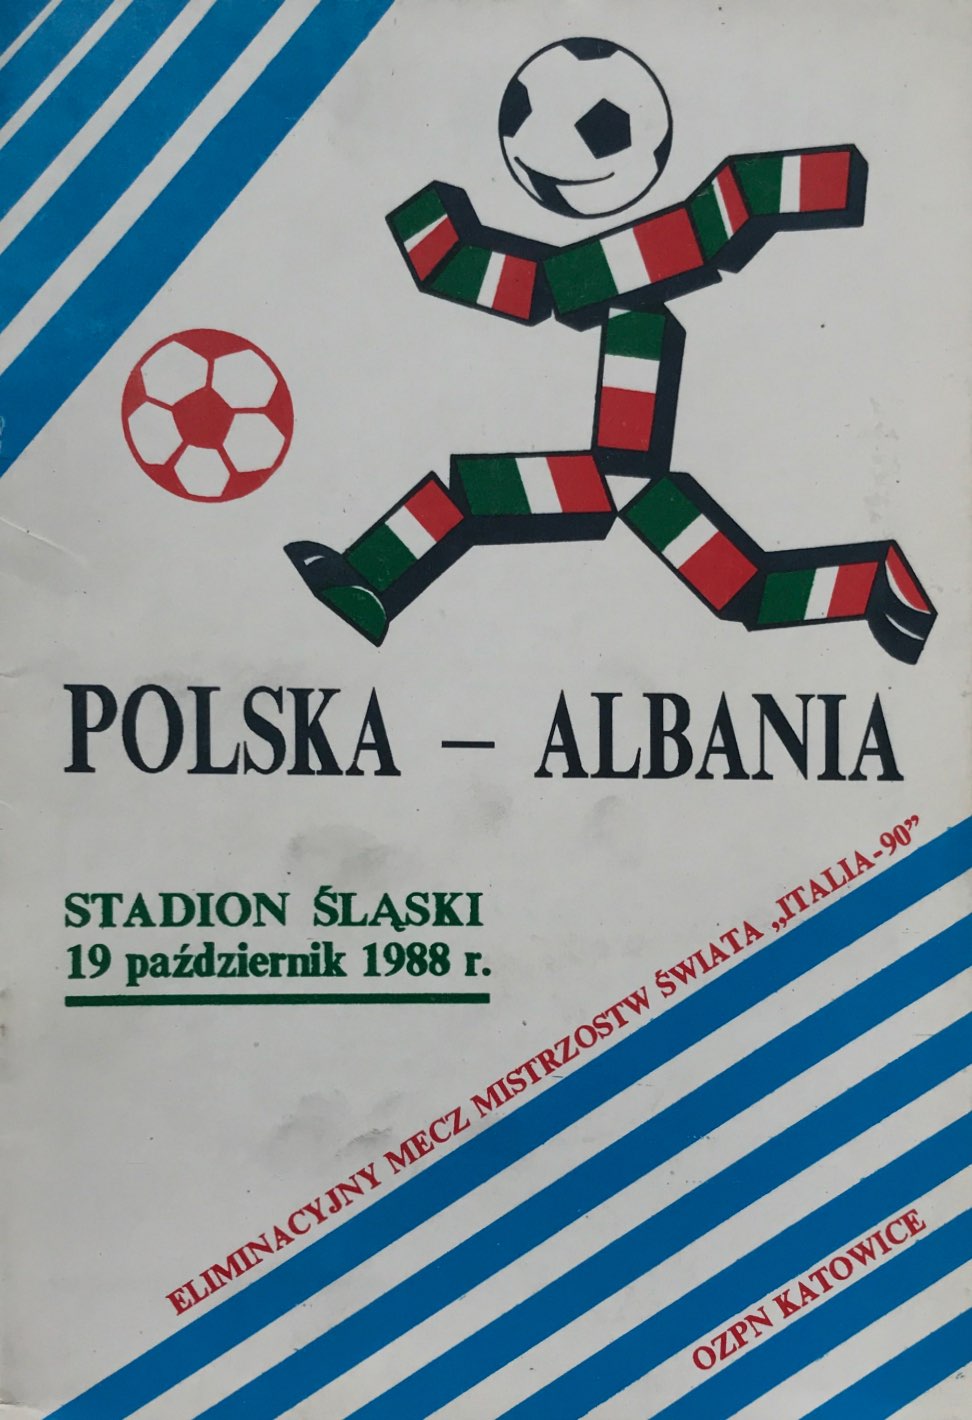 Program meczowy Polska - Albania 1:0 (19.10.1988).